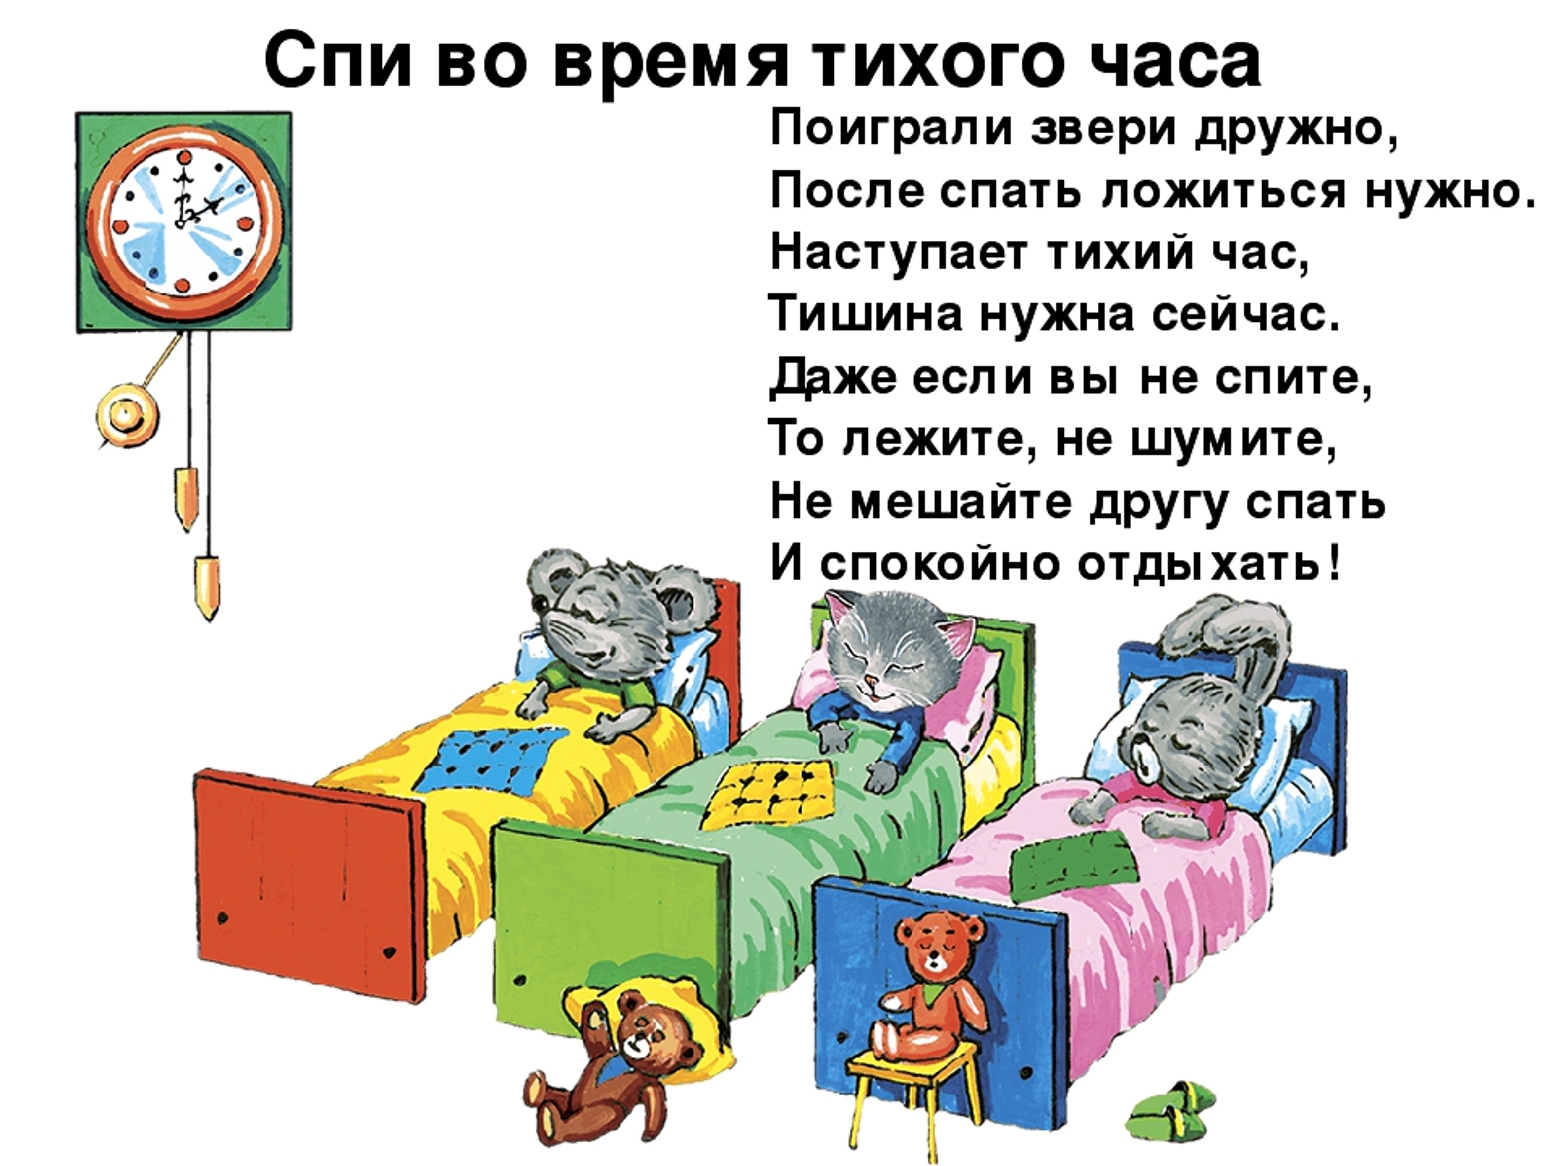 Как правильно слово спишь. Стих про тихий час. Правила поведения в спальне в детском саду. Тихий час стихи для детей. Дети в детском саду тихий час.